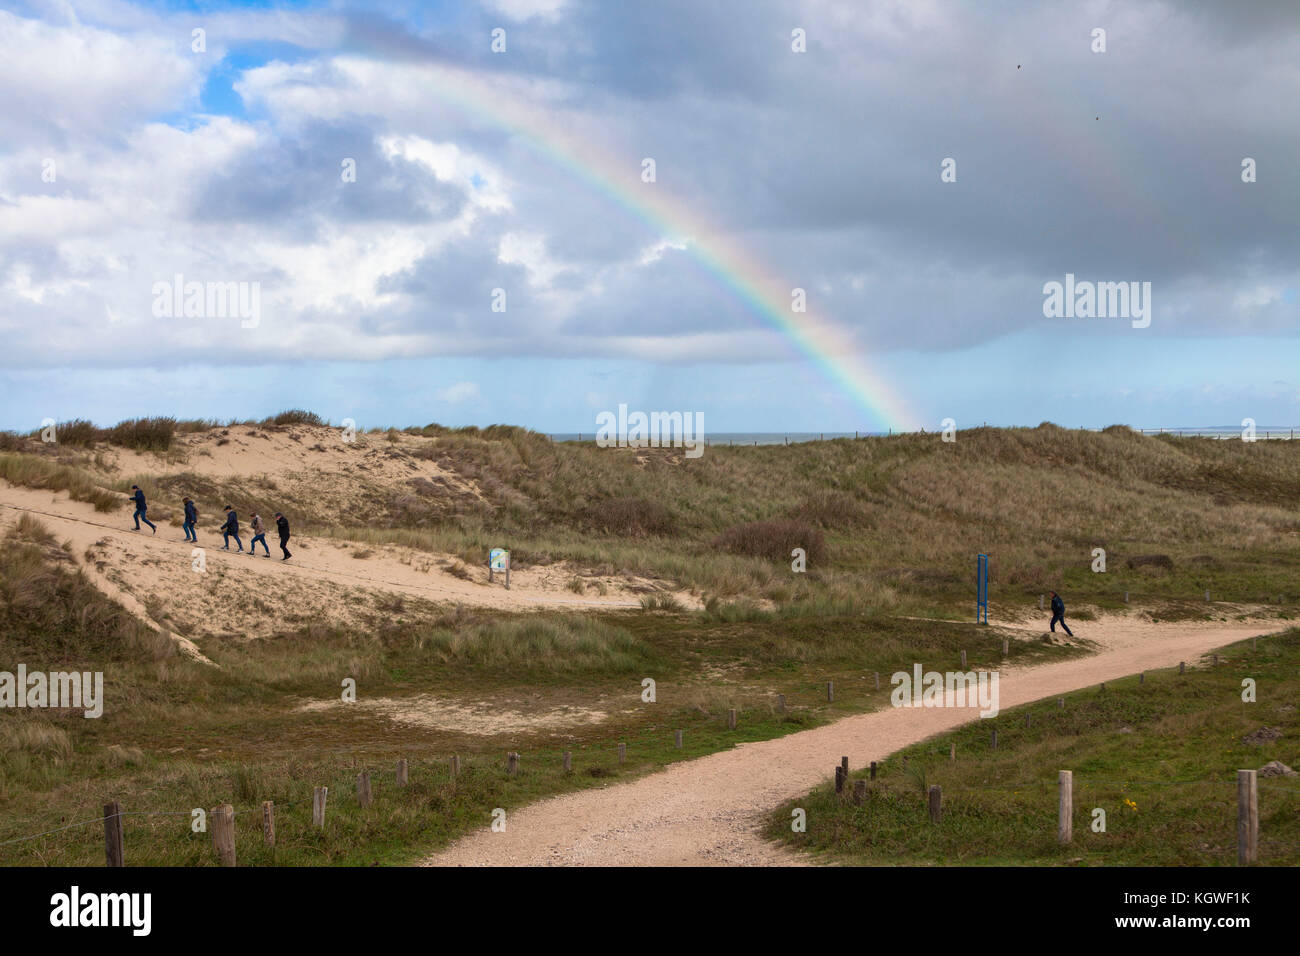 Paesi Bassi, Zeeland, percorso attraverso le dune nella riserva naturale de Manteling tra Domburg e Oostkapelle sulla penisola di Walcheren, arcobaleno. Foto Stock